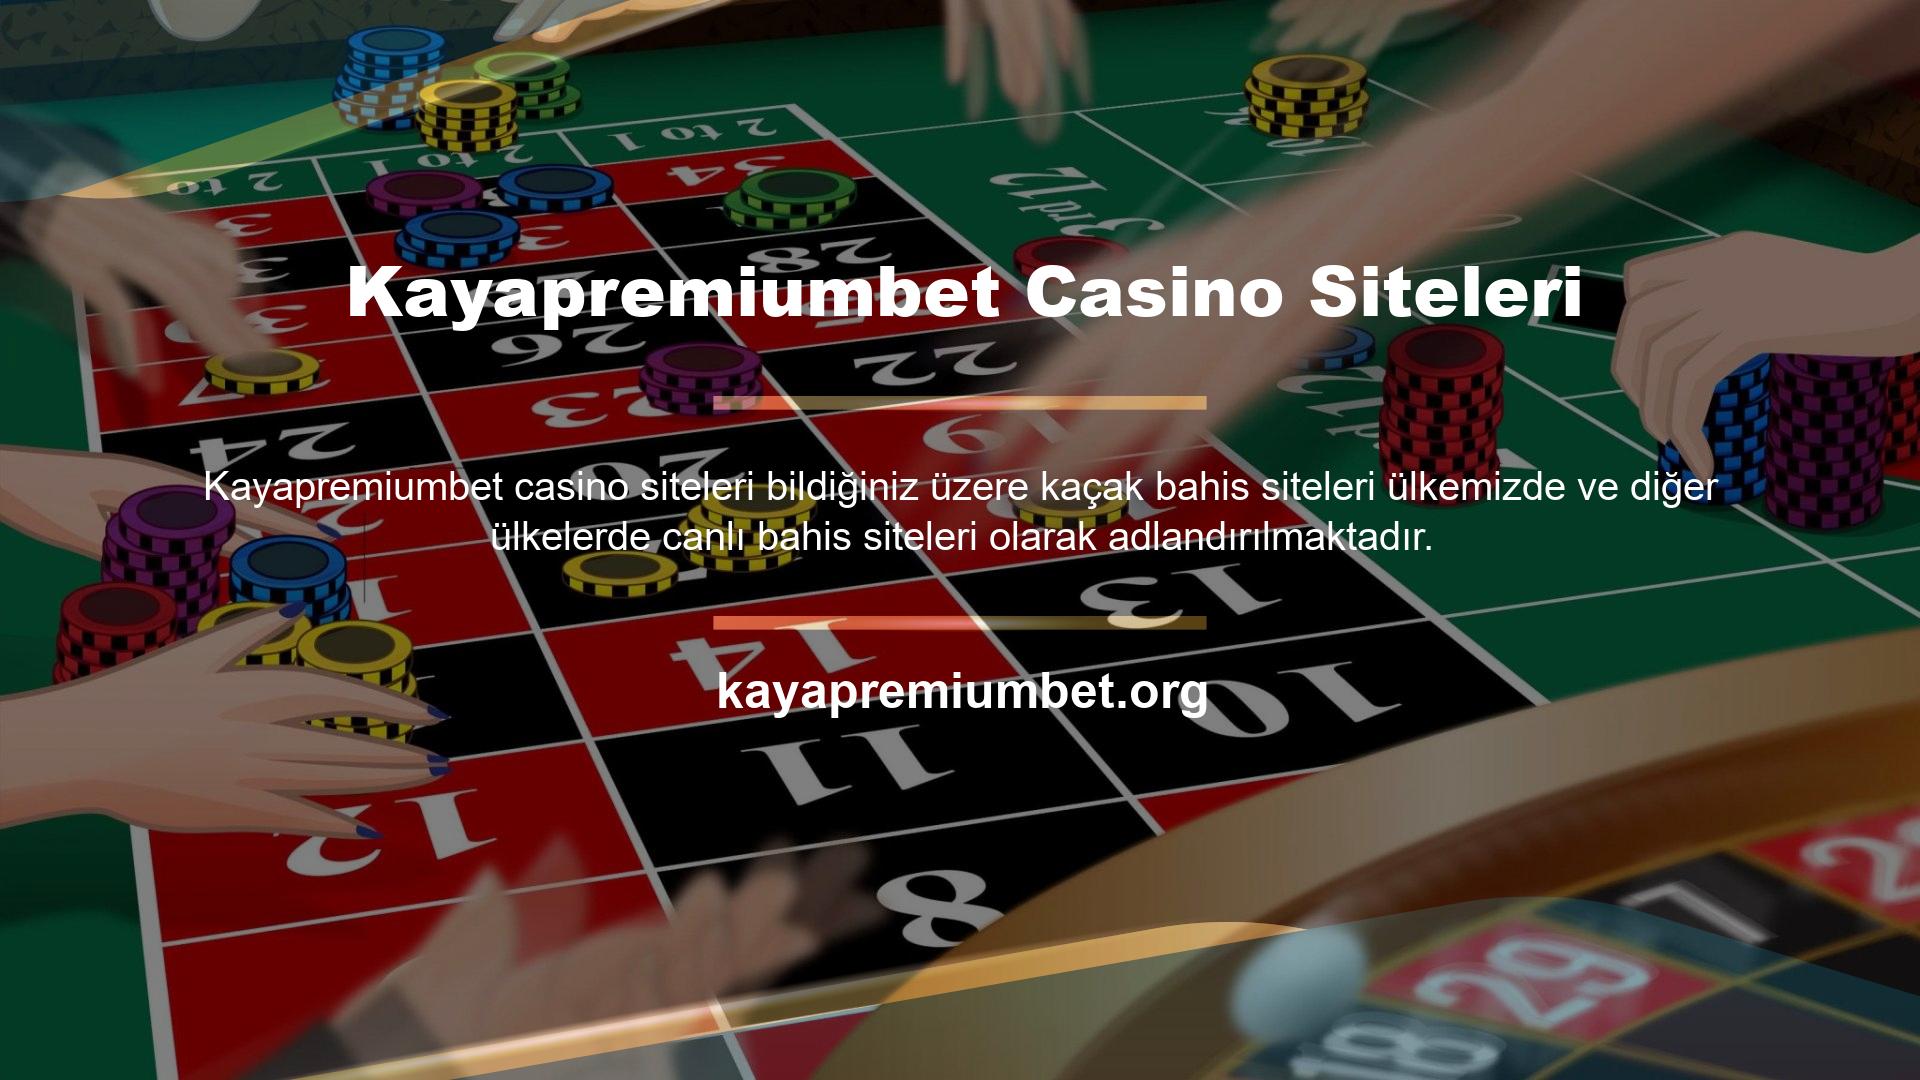 Ancak, canlı veya sanal casino siteleri gibi görünen sitelerin Türkiye'de yasa dışı olduğunu anlamak çok önemlidir